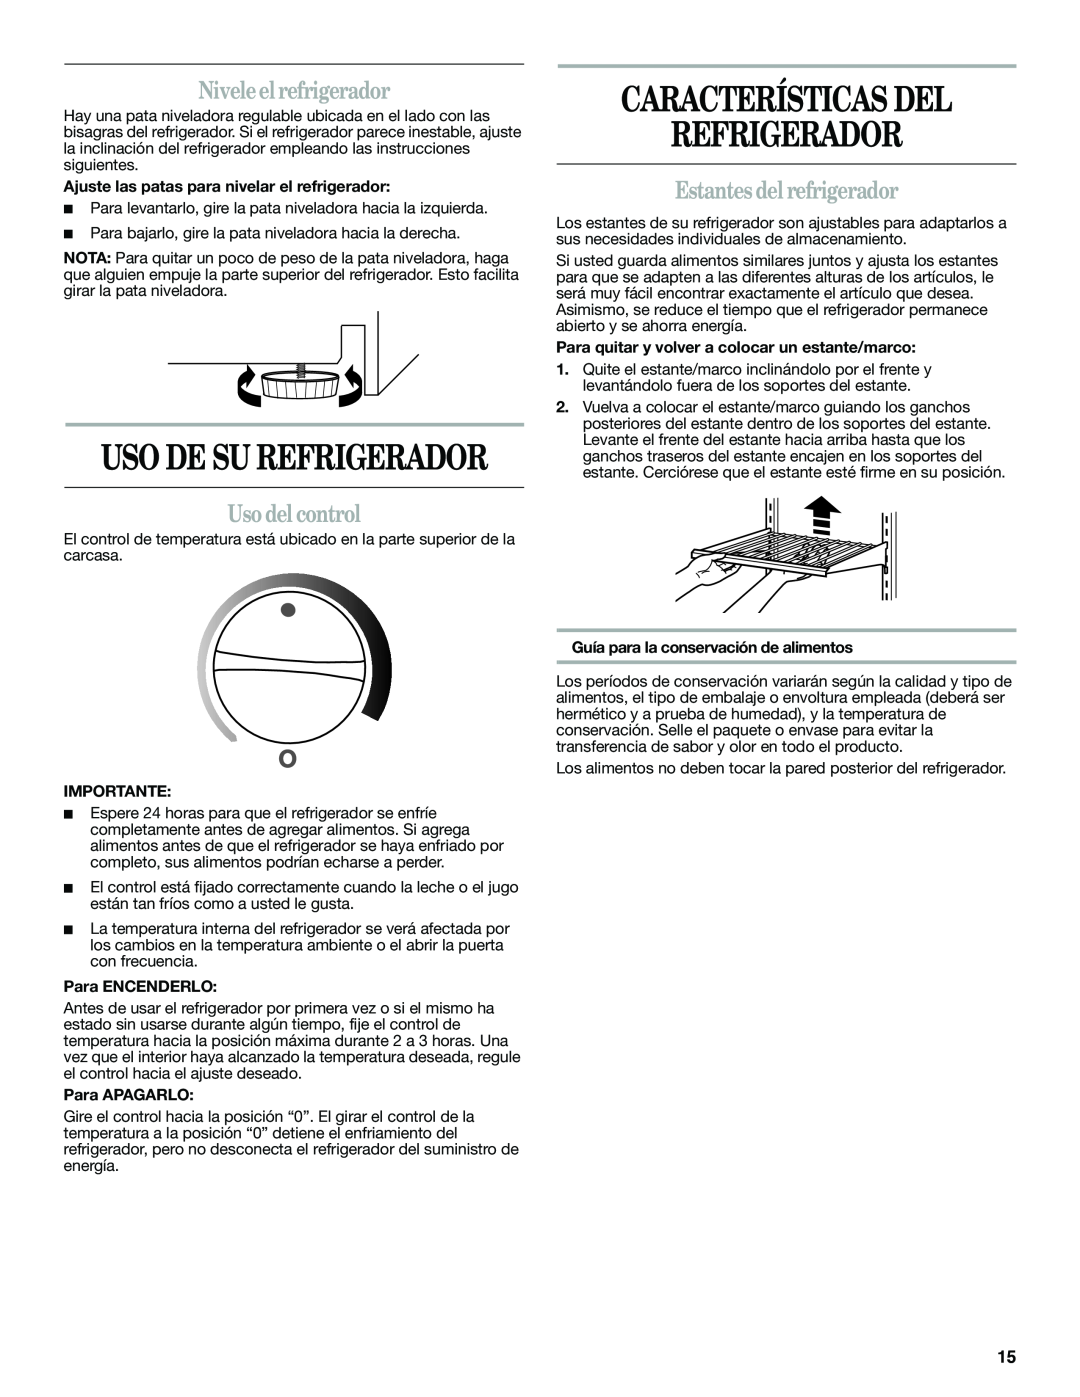 Whirlpool WAR349BSL manual Características Del Refrigerador, Niveleelrefrigerador, Usodelcontrol, Estantesdel refrigerador 